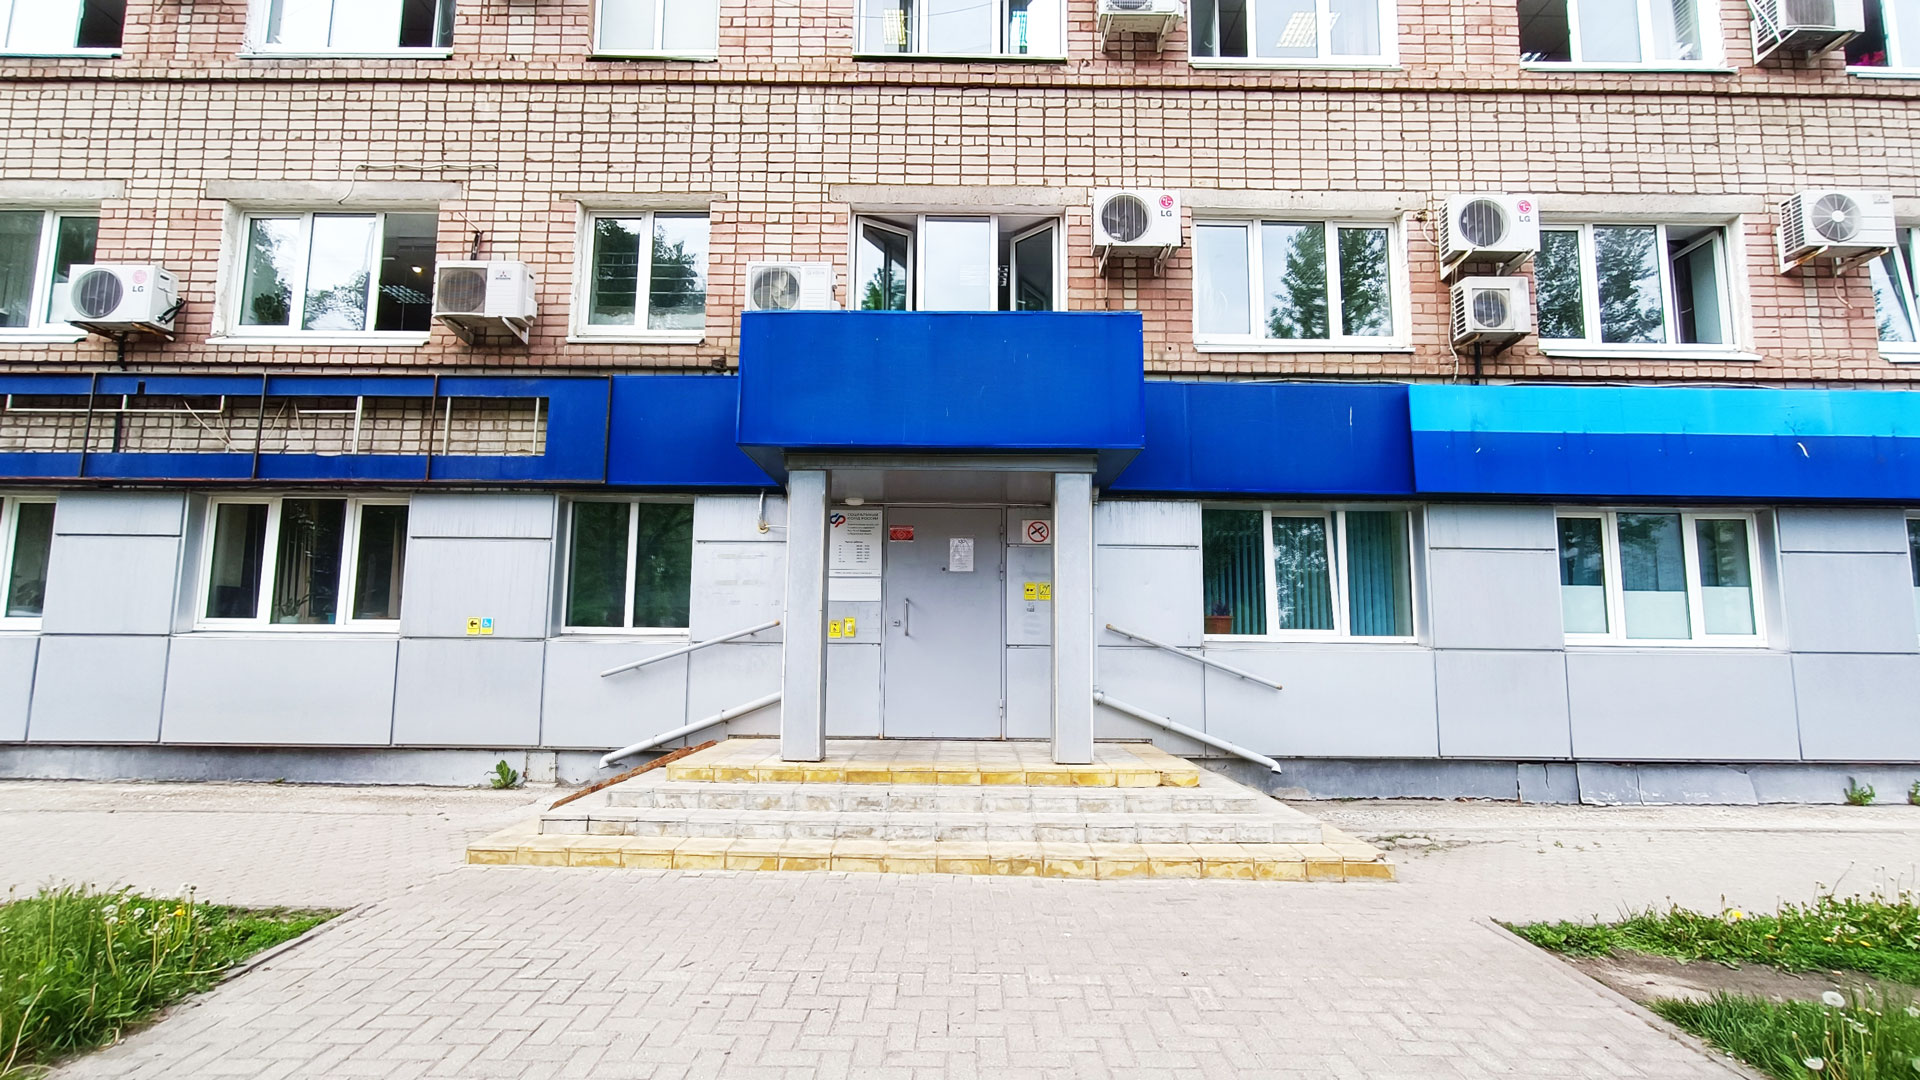 Пенсионный фонд Ярославль: общий вид здания управления клиентскими службами по ЯО.